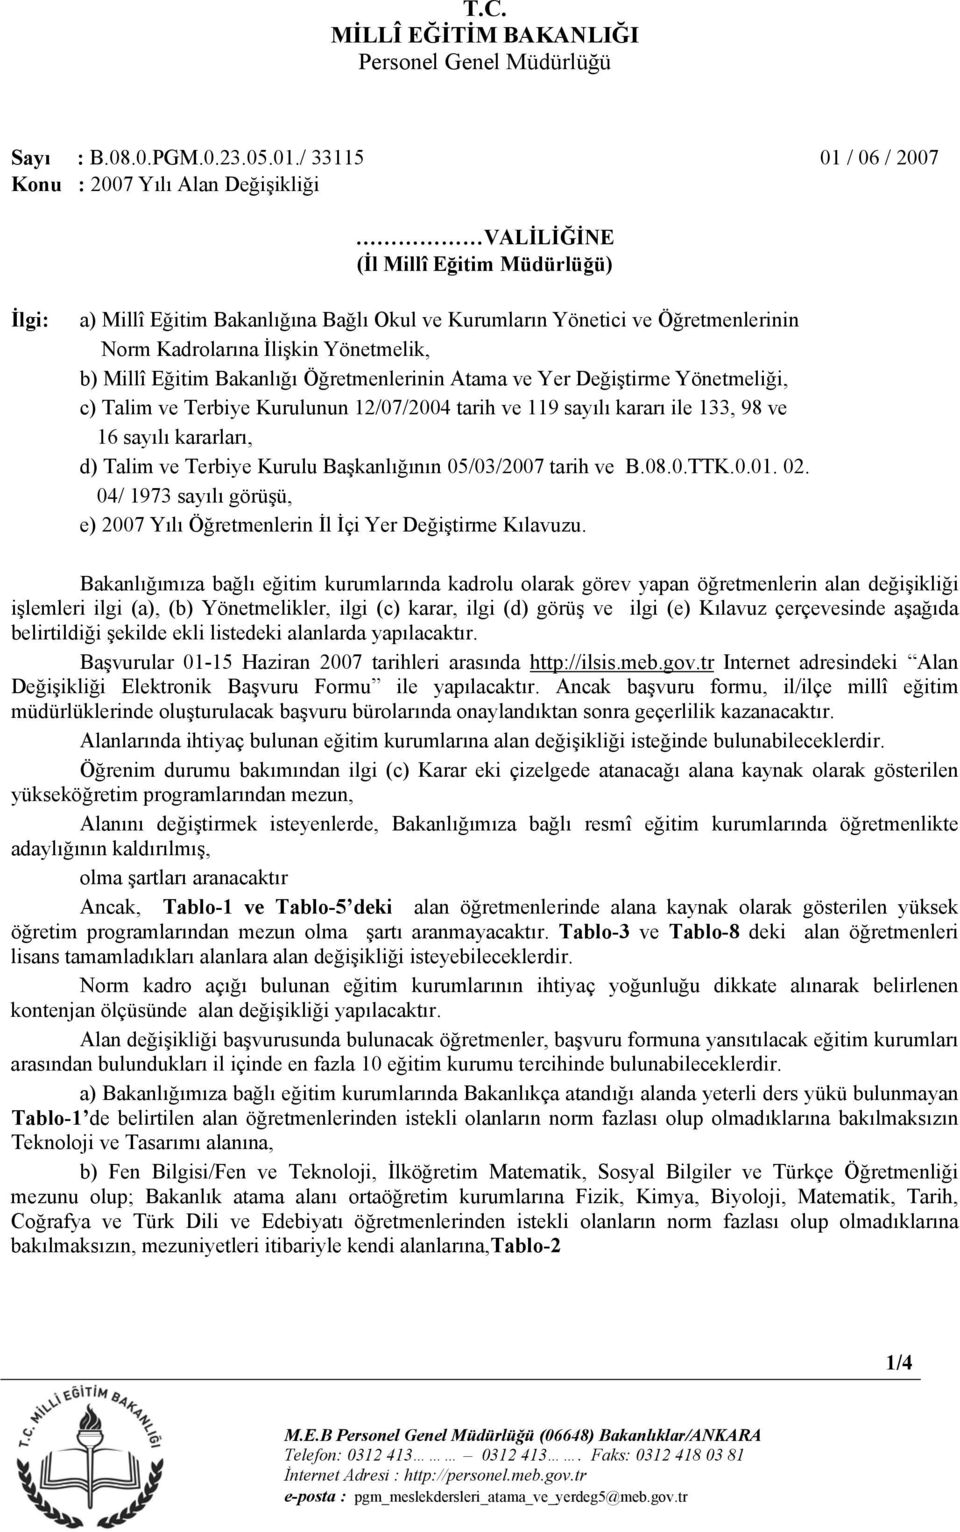 İlişkin Yönetmelik, b) Millî Eğitim Bakanlığı Öğretmenlerinin Atama ve Yer Değiştirme Yönetmeliği, c) Talim ve Terbiye Kurulunun 12/07/2004 tarih ve 119 sayılı kararı ile 133, 98 ve 16 sayılı